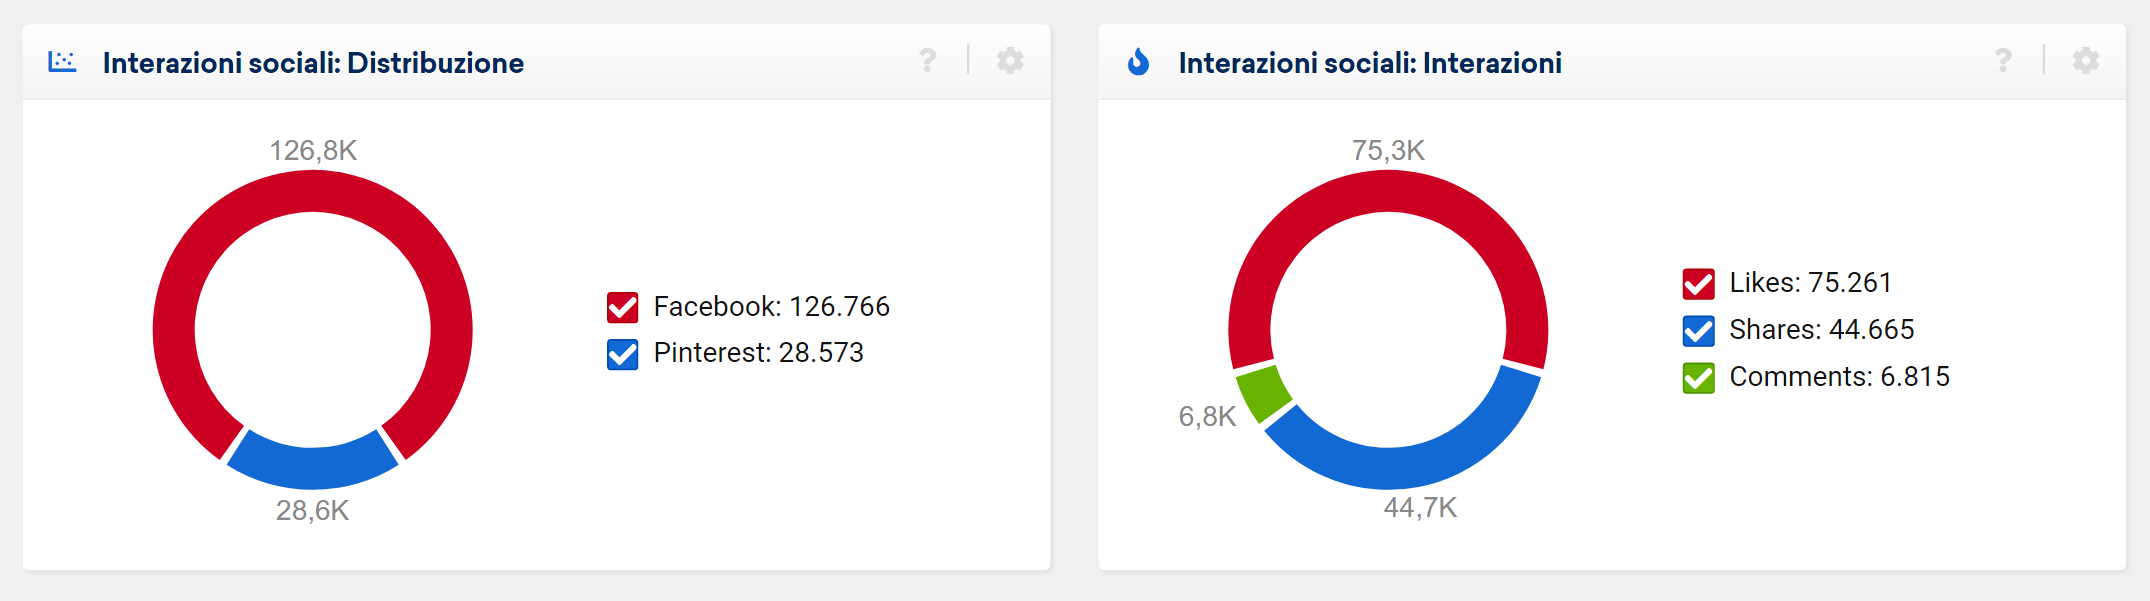 Distribuzione delle interazioni sociali nel modulo Social del Toolbox SISTRIX